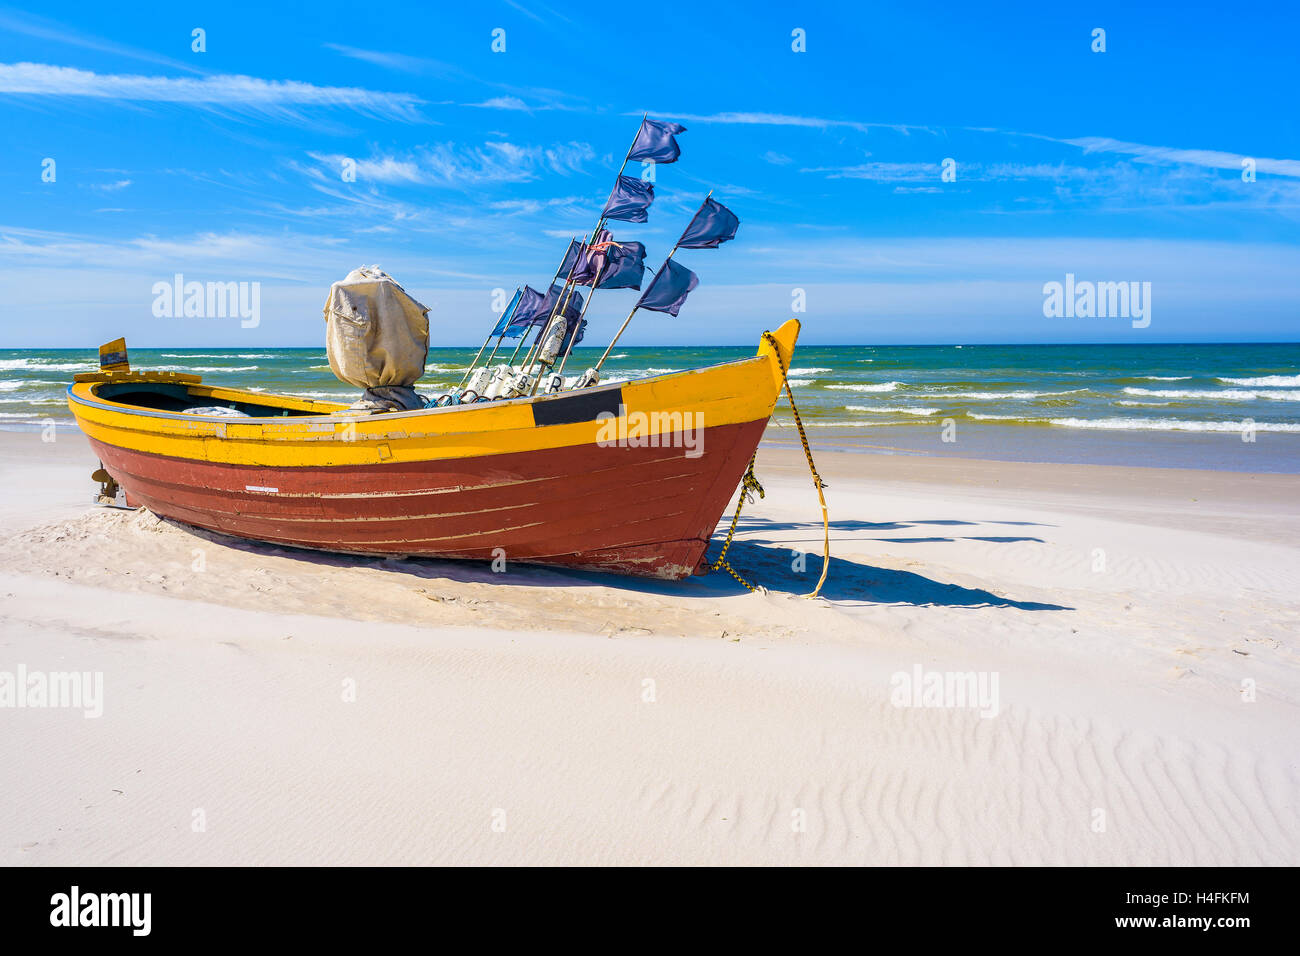 Bateau de pêche traditionnel coloré sur la plage de sable de la mer Baltique, la Pologne Debki en Banque D'Images